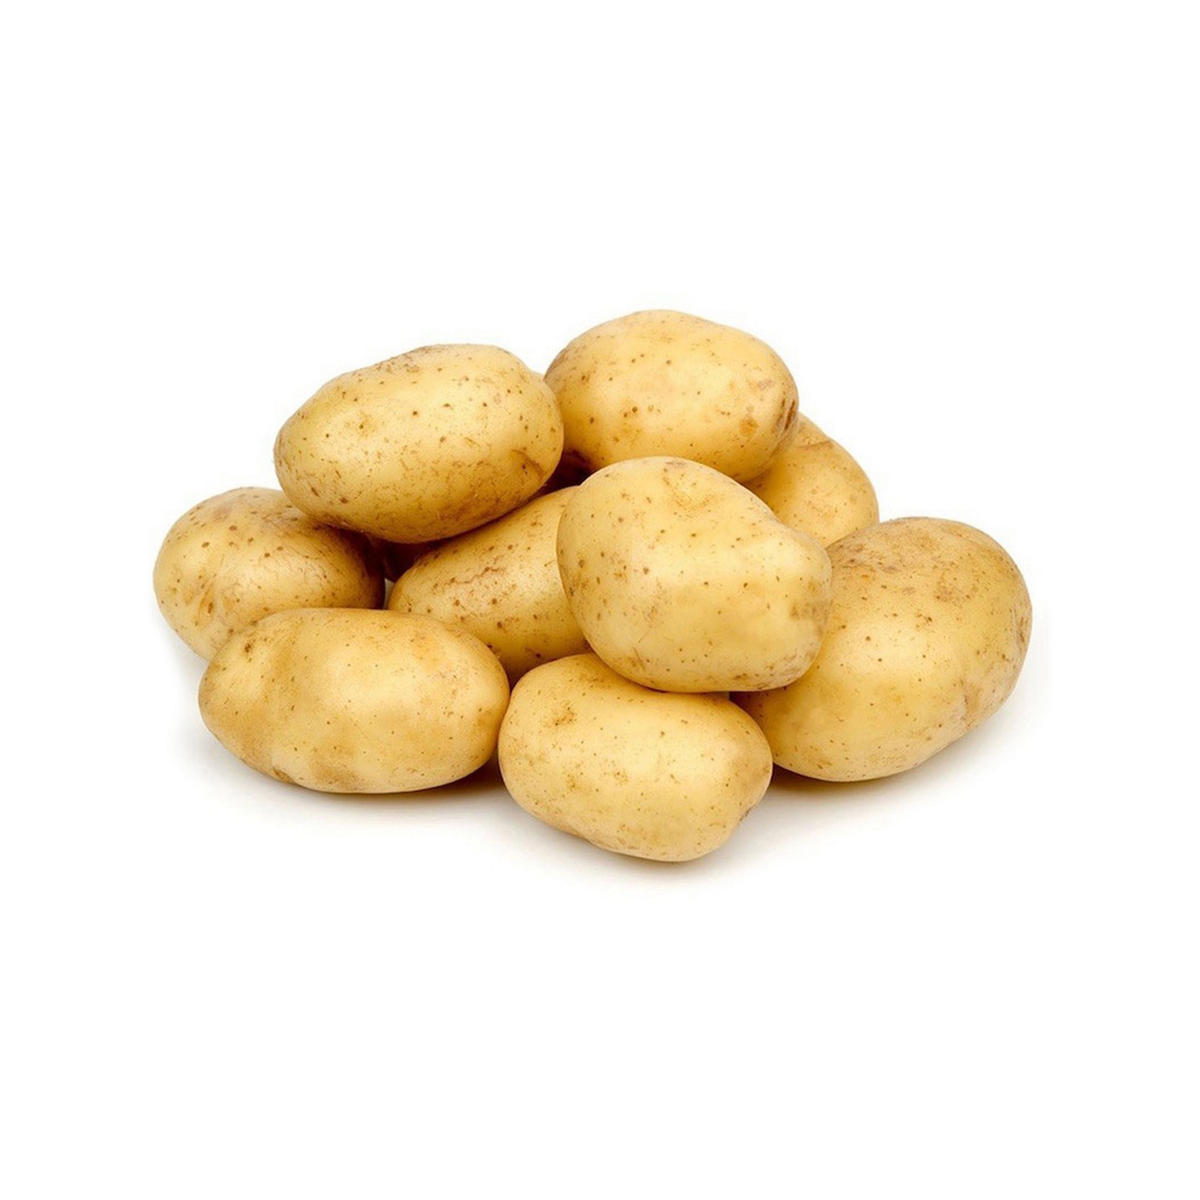 Potato Premium Qatar 1pkt